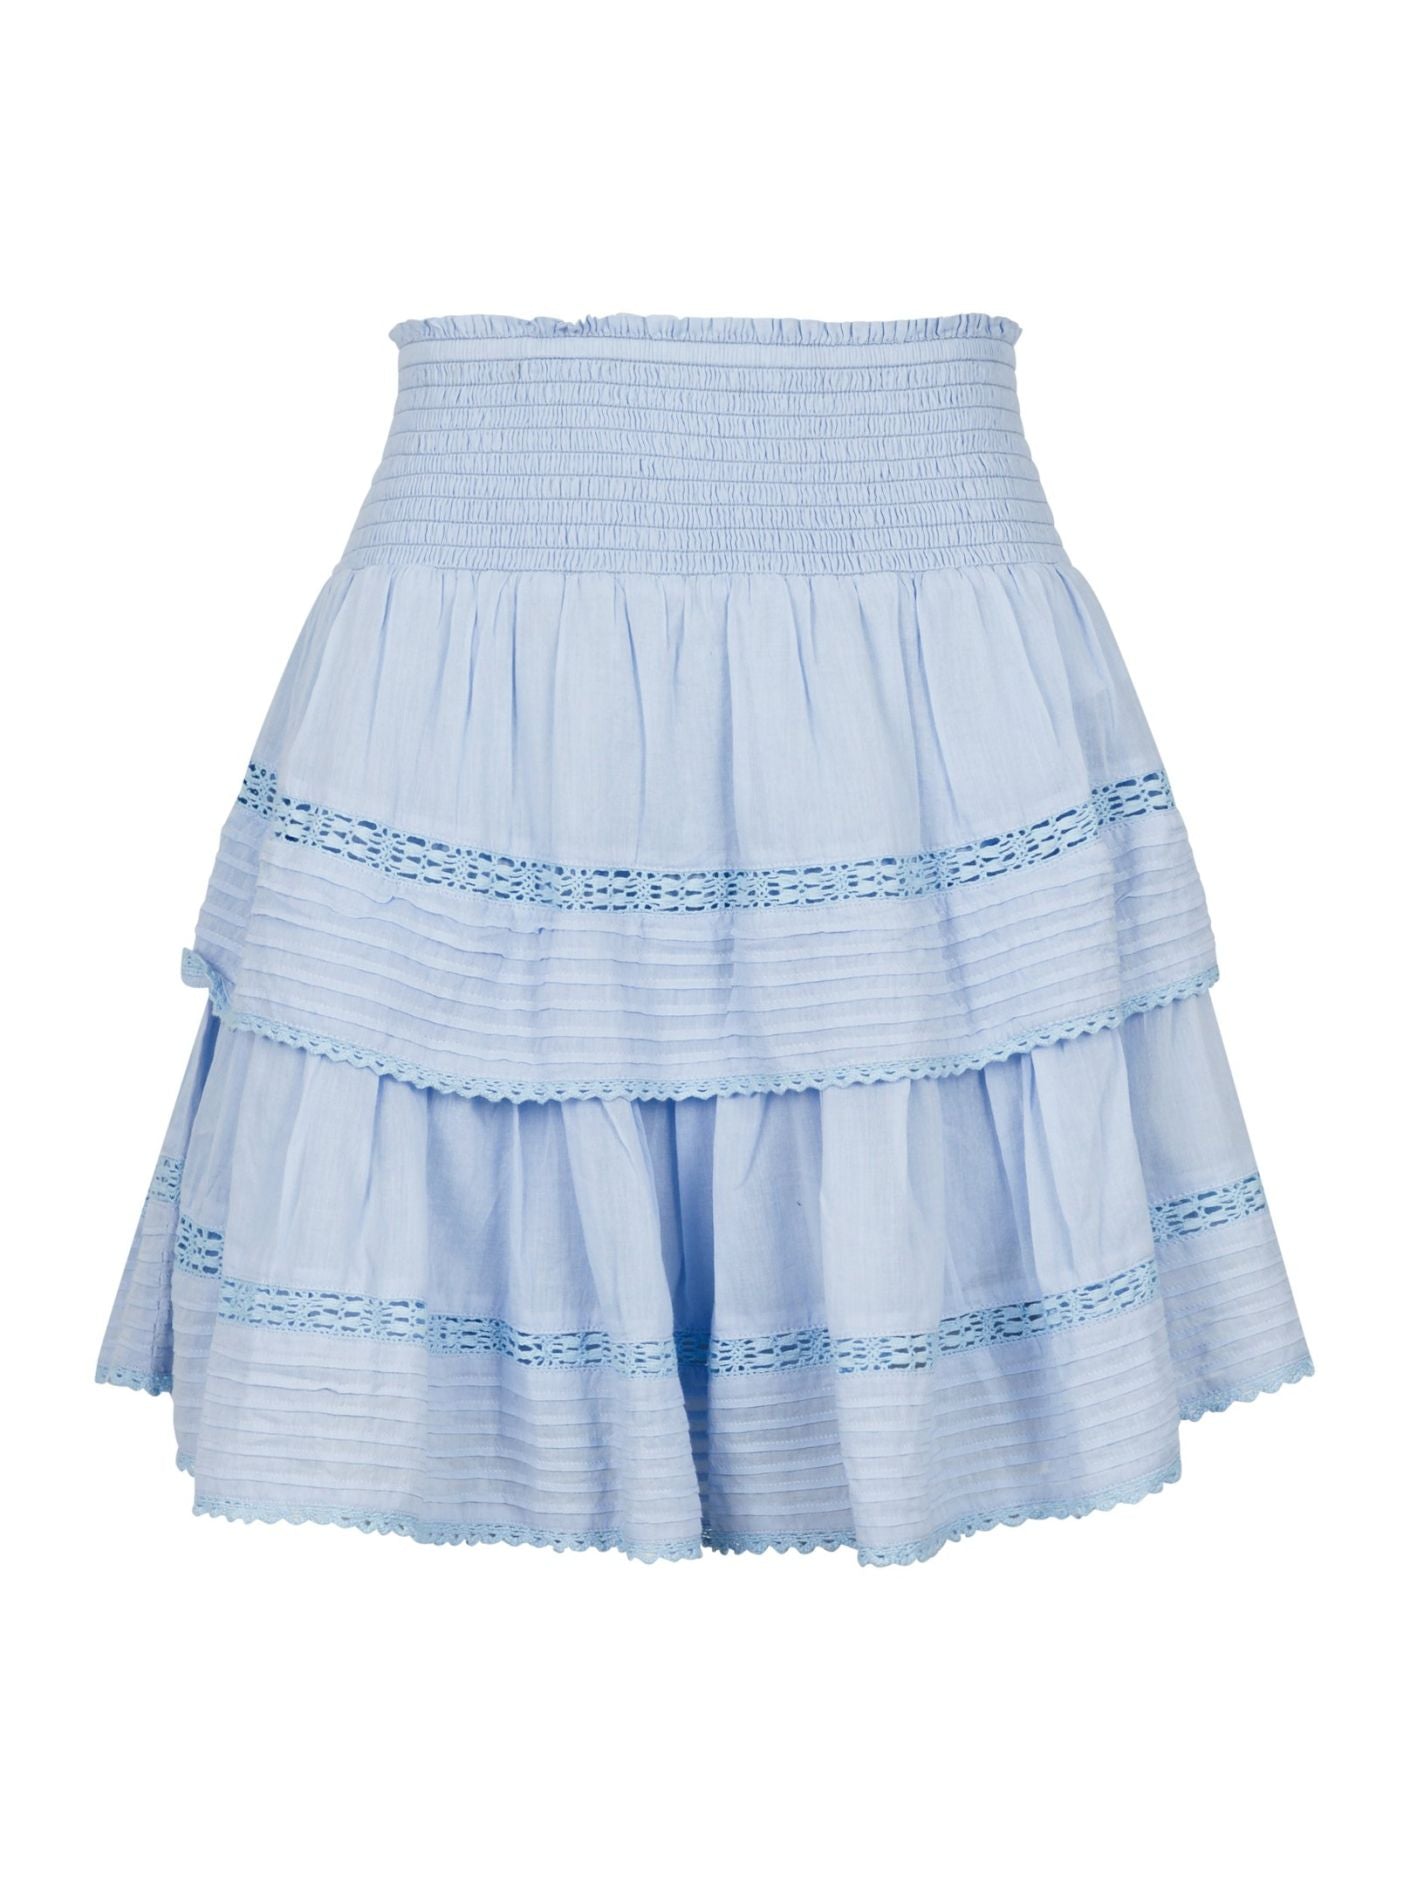 Kenia S Voile Skirt Light Blue